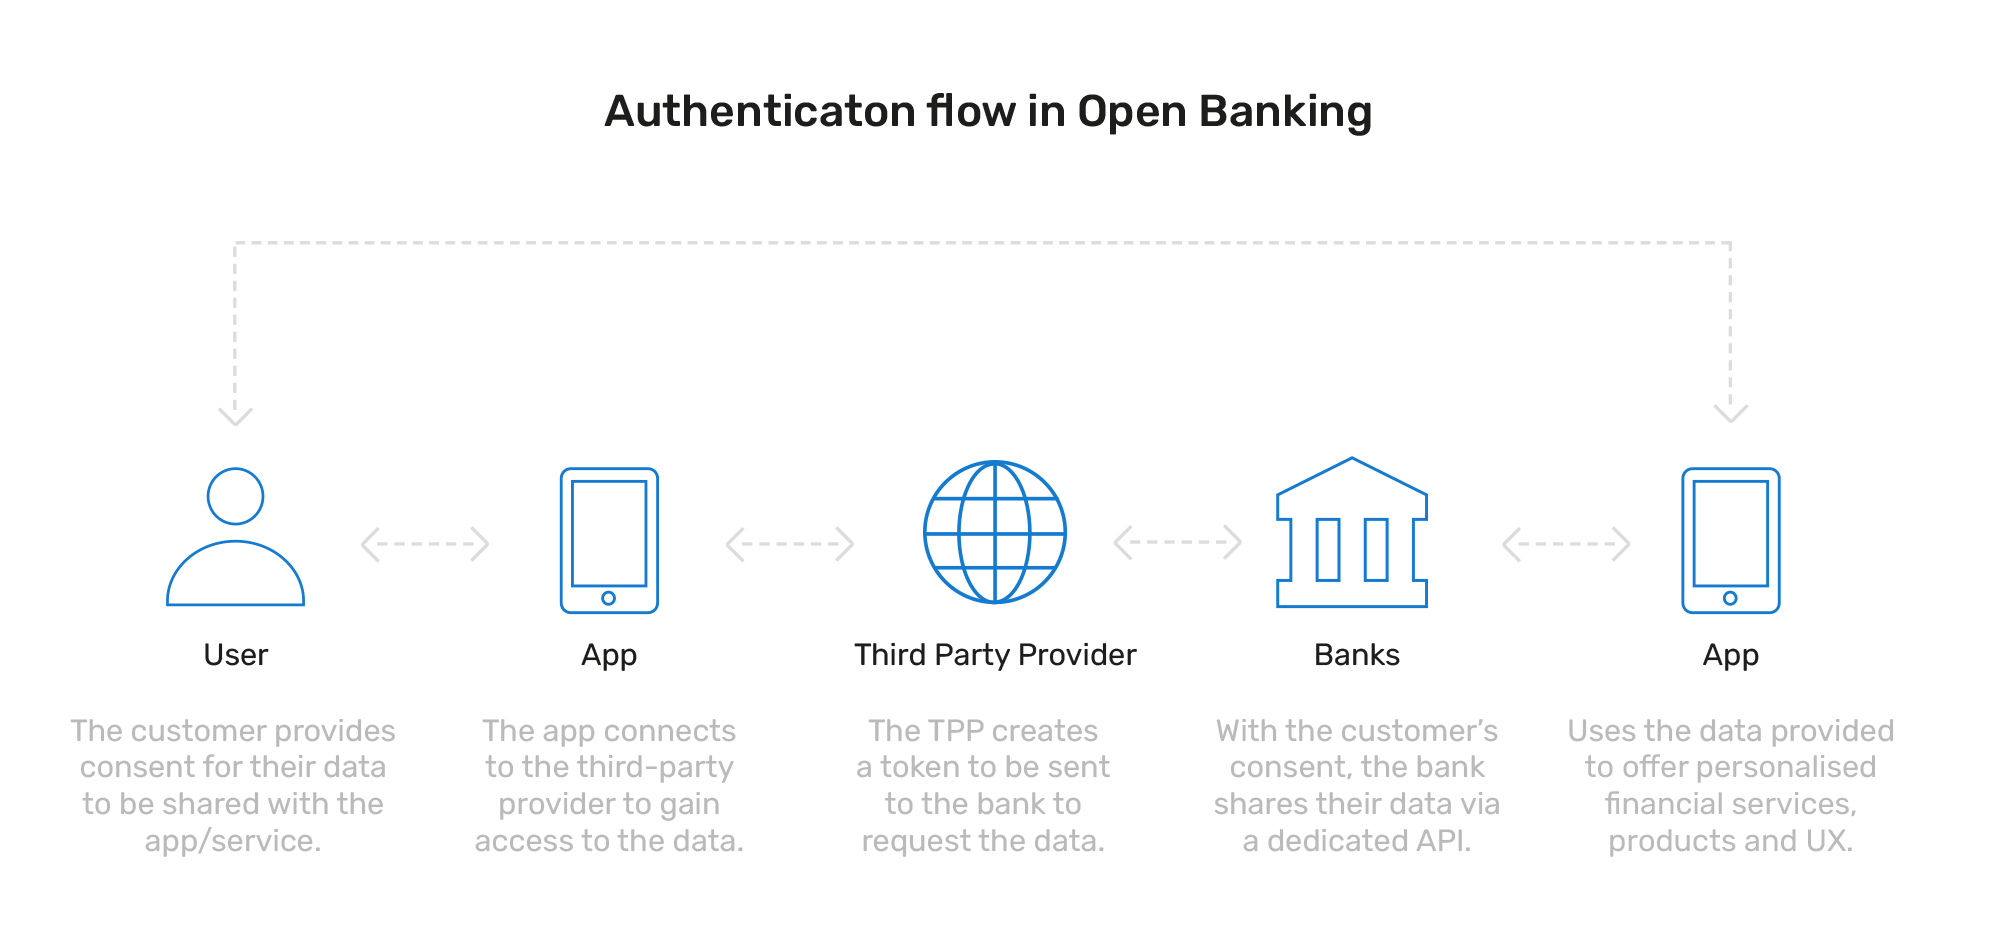 Open banking flow diagram